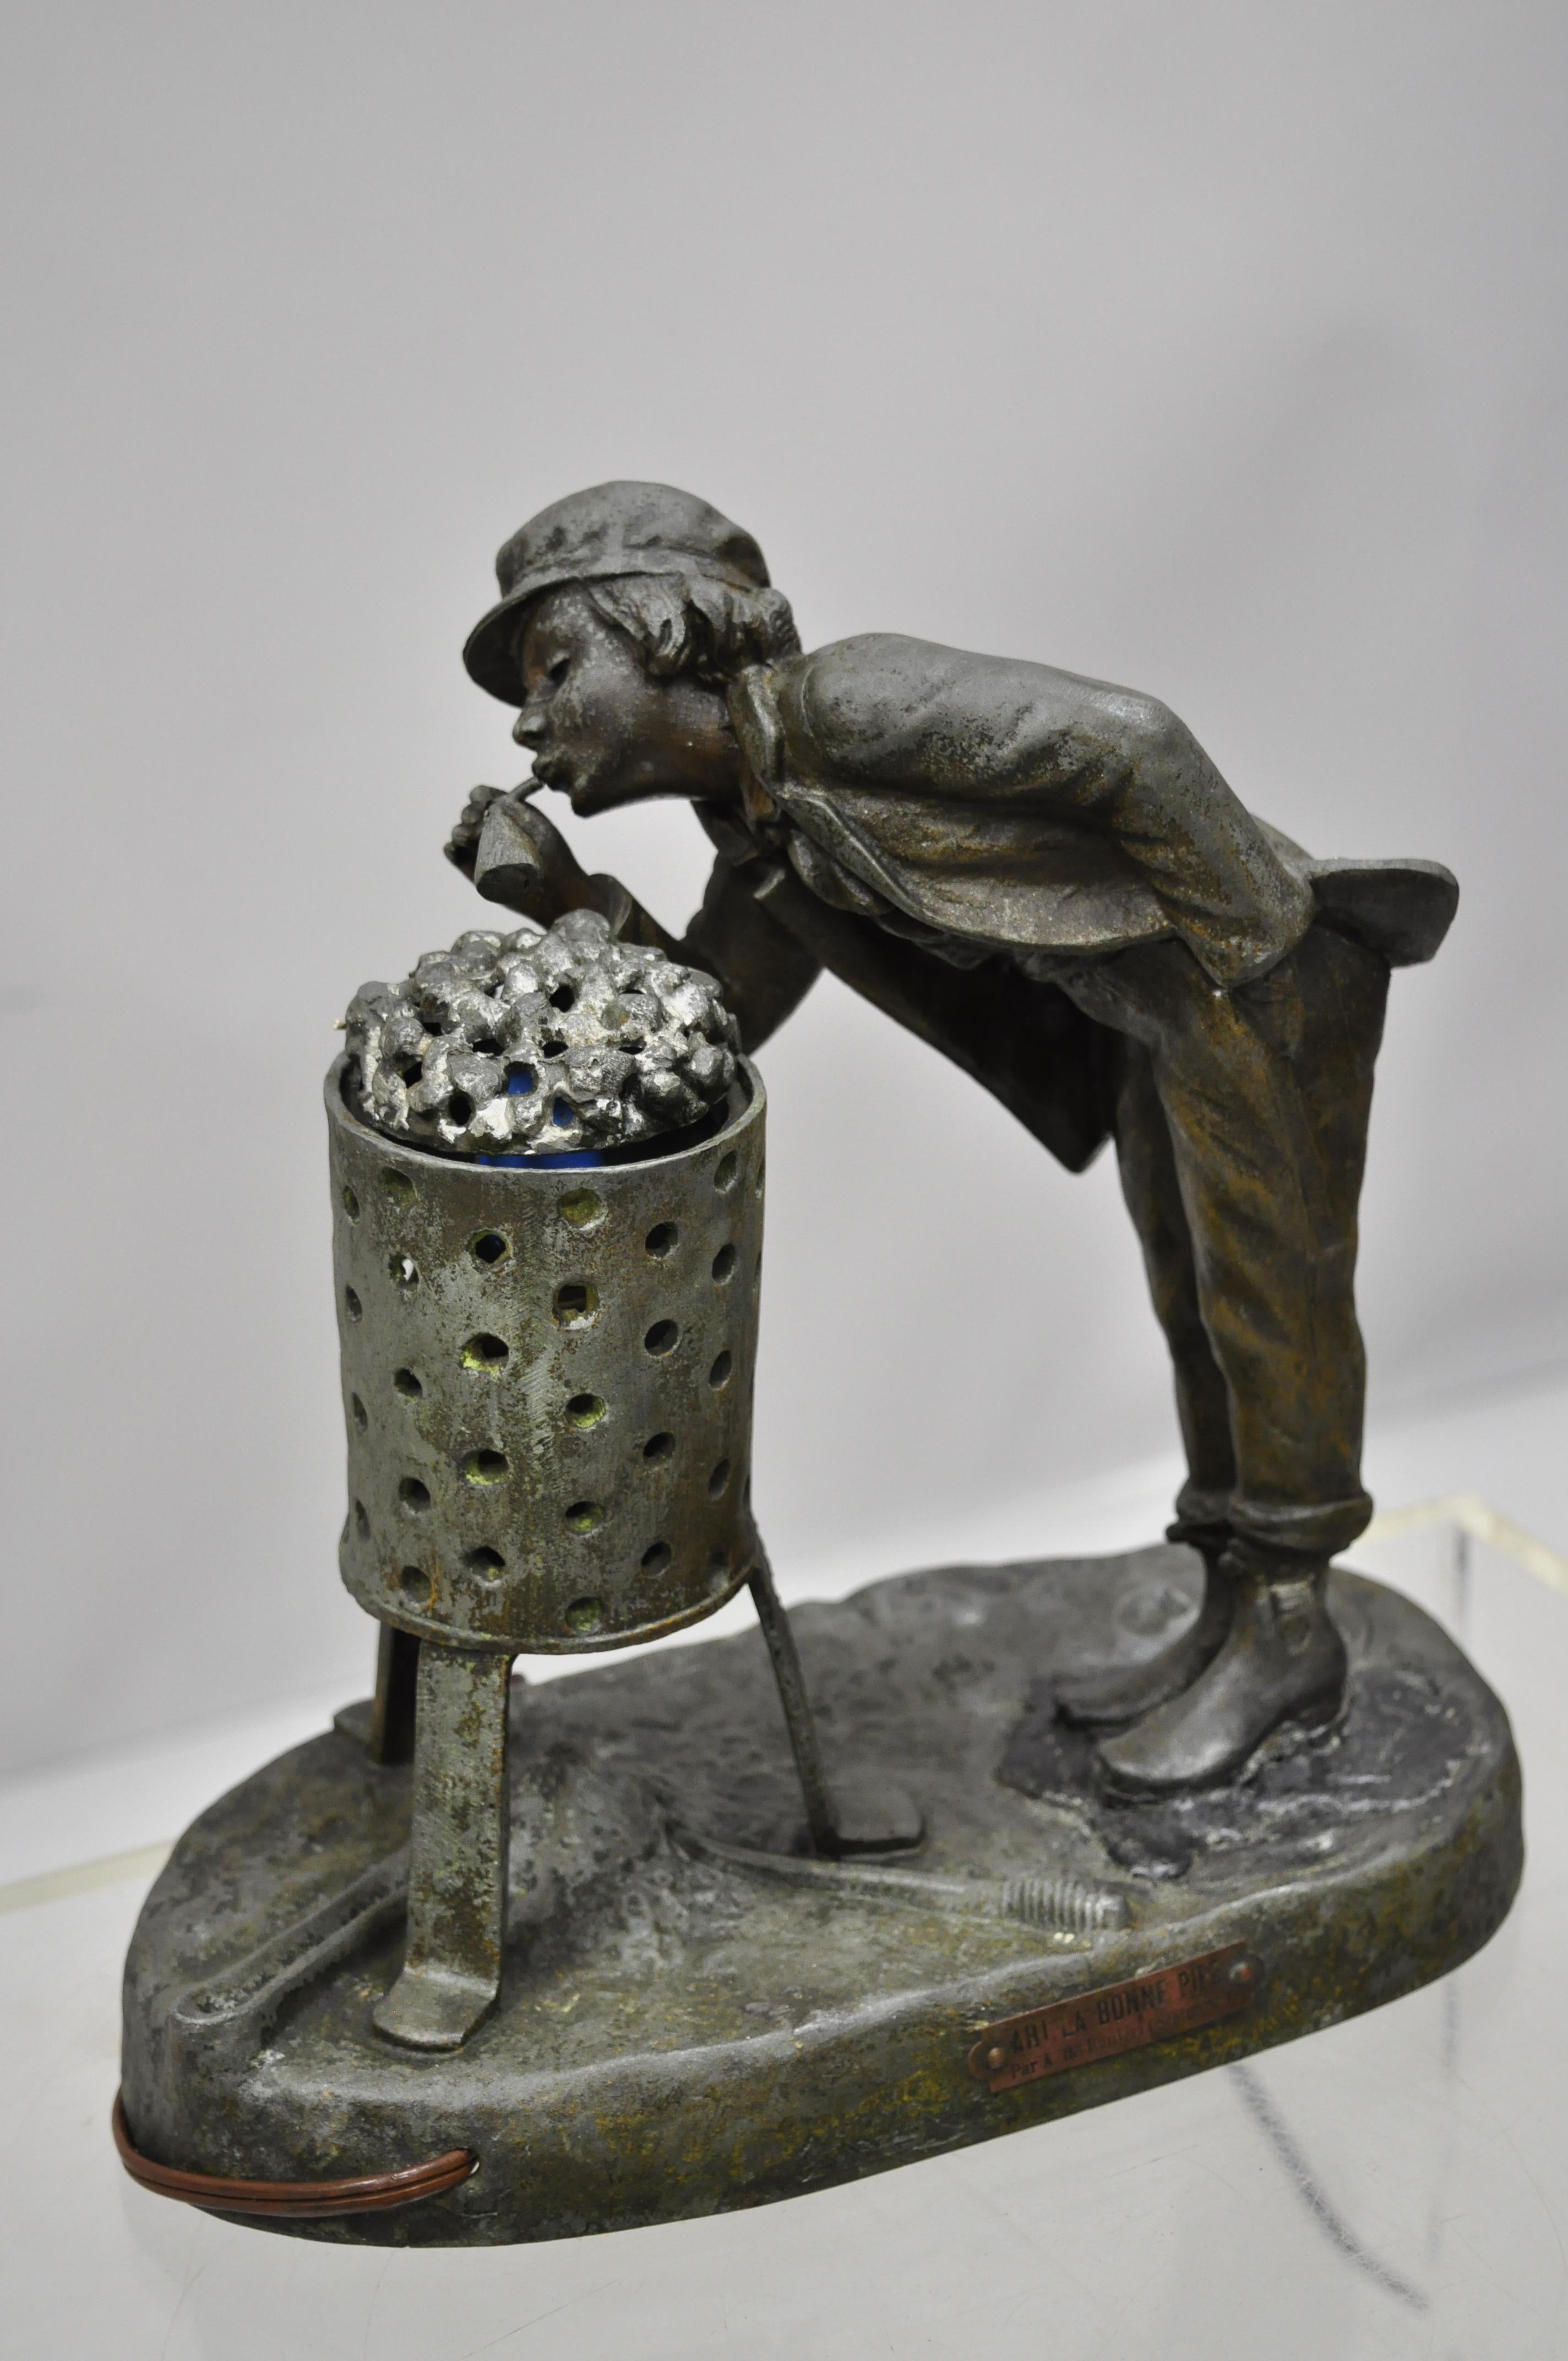 Antike figurale Spelter Metall Ahi La Bonne pipe Ranieri Statue Art Deco Lampe (B). Der Gegenstand besteht aus einer Metallkonstruktion aus Zinn, einer Plakette auf der Vorderseite mit der Aufschrift 